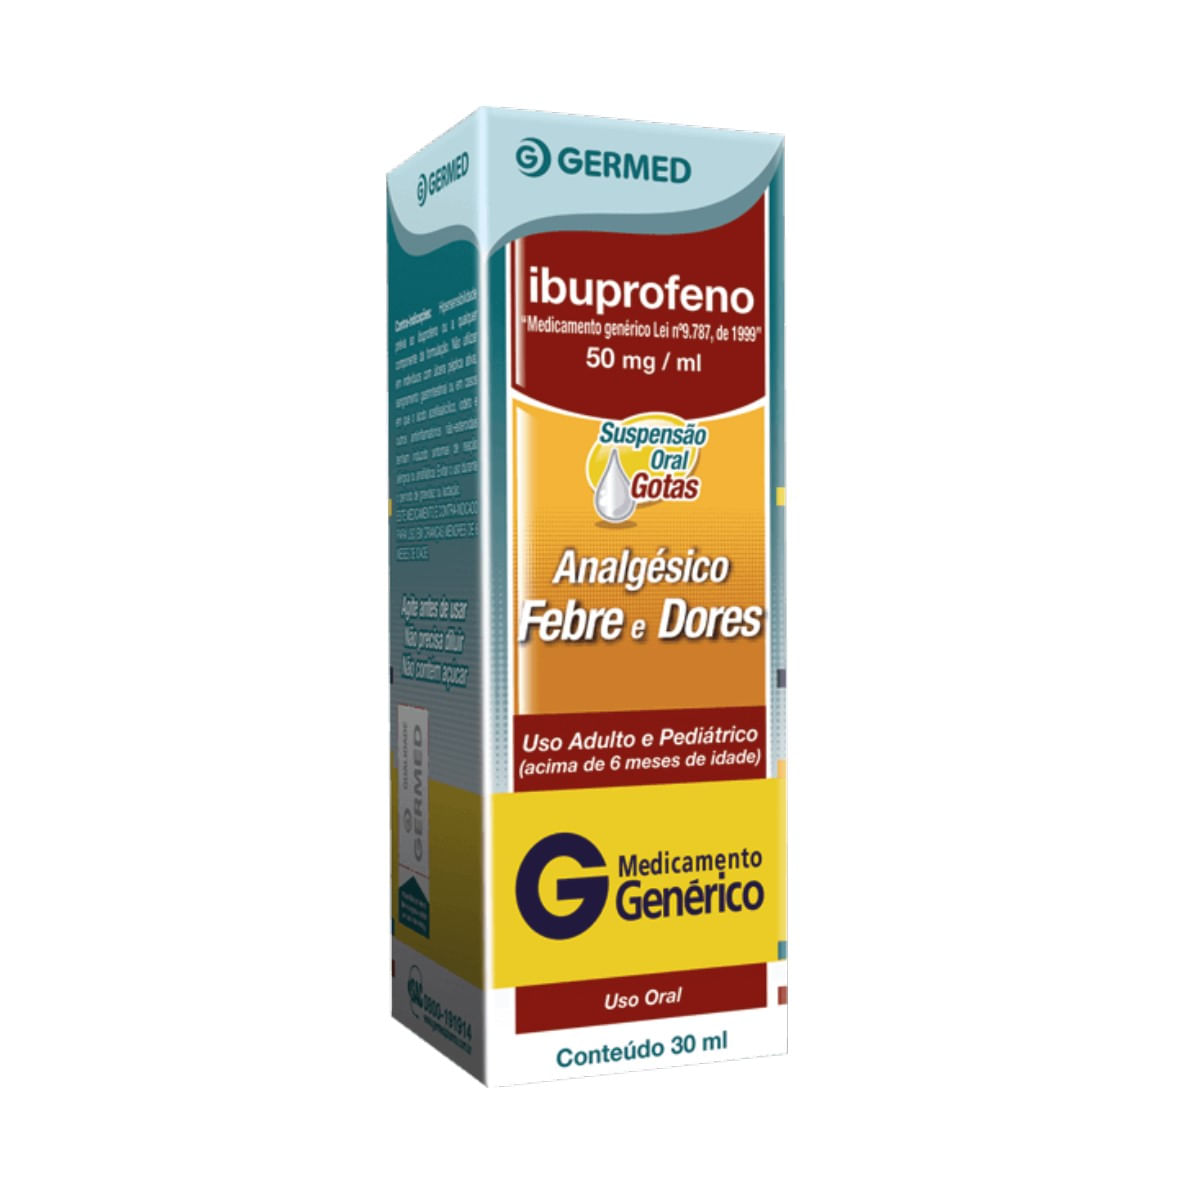 ibuprofeno-em-gotas-germed-30ml-1.jpg